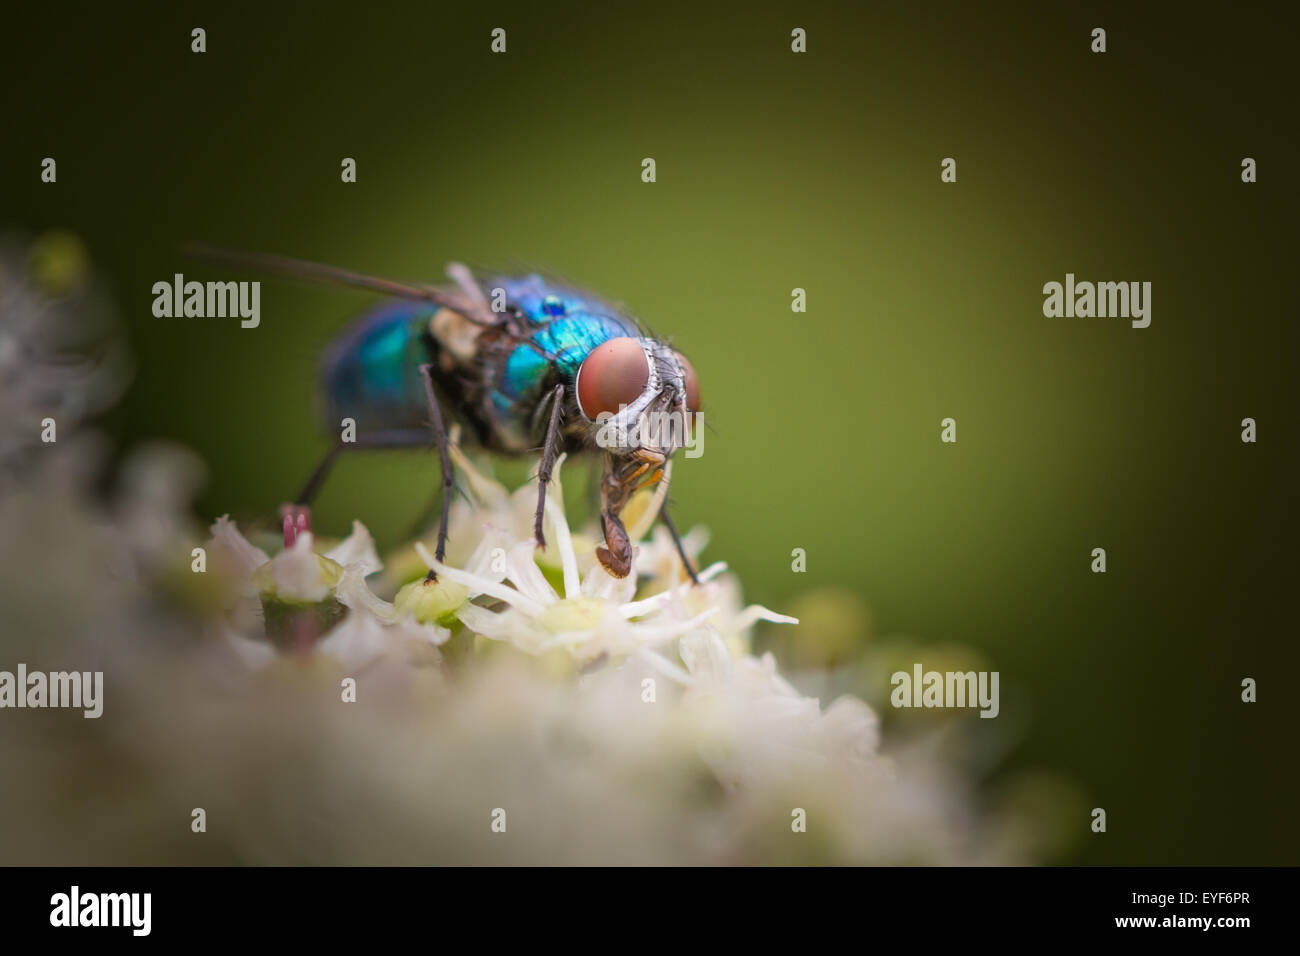 Greenbottle fly montrant outre de ses couleurs chatoyantes et du proboscis Banque D'Images